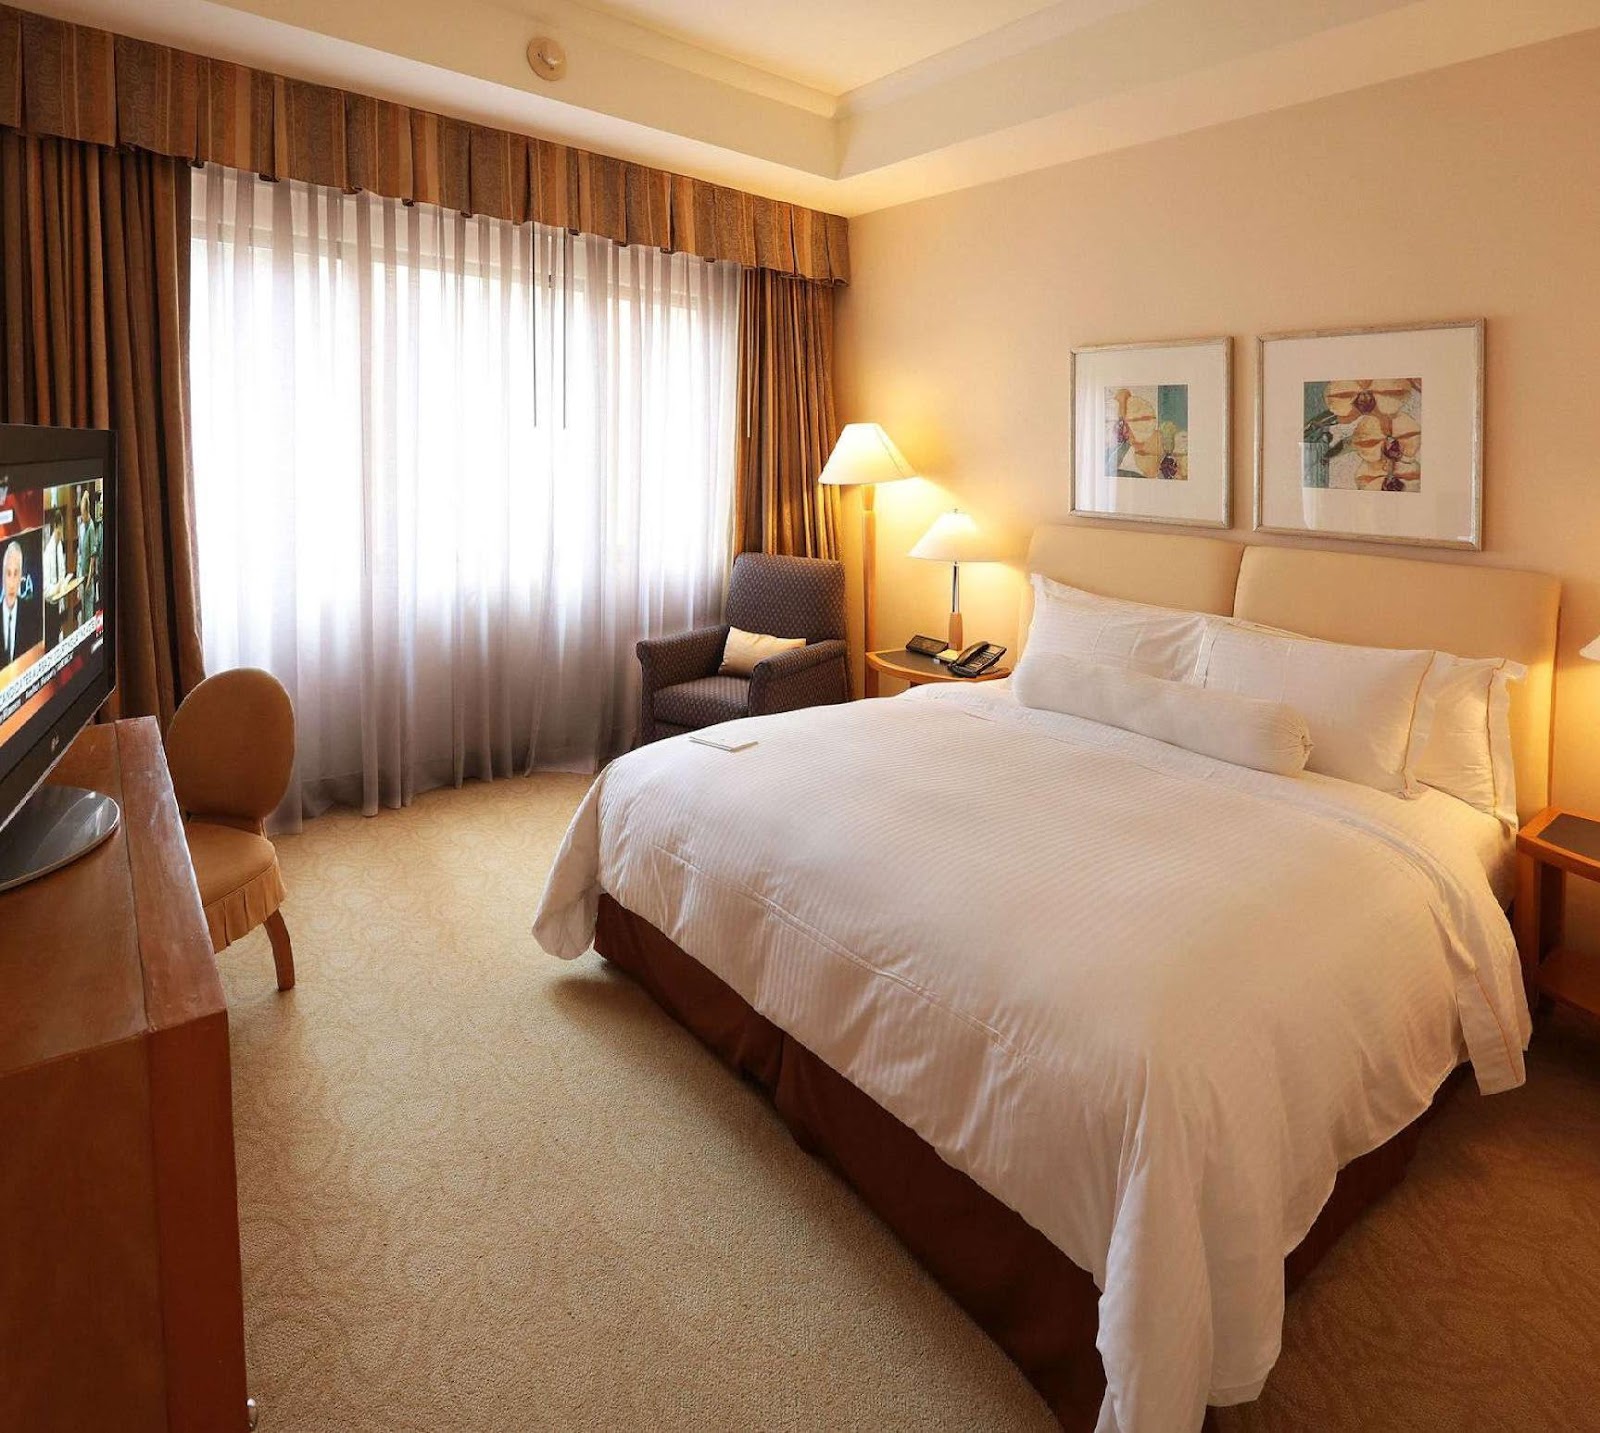 Khách sạn Caraven sở hữu phòng nghỉ rộng rãi với thiết kế đơn giản lịch sự